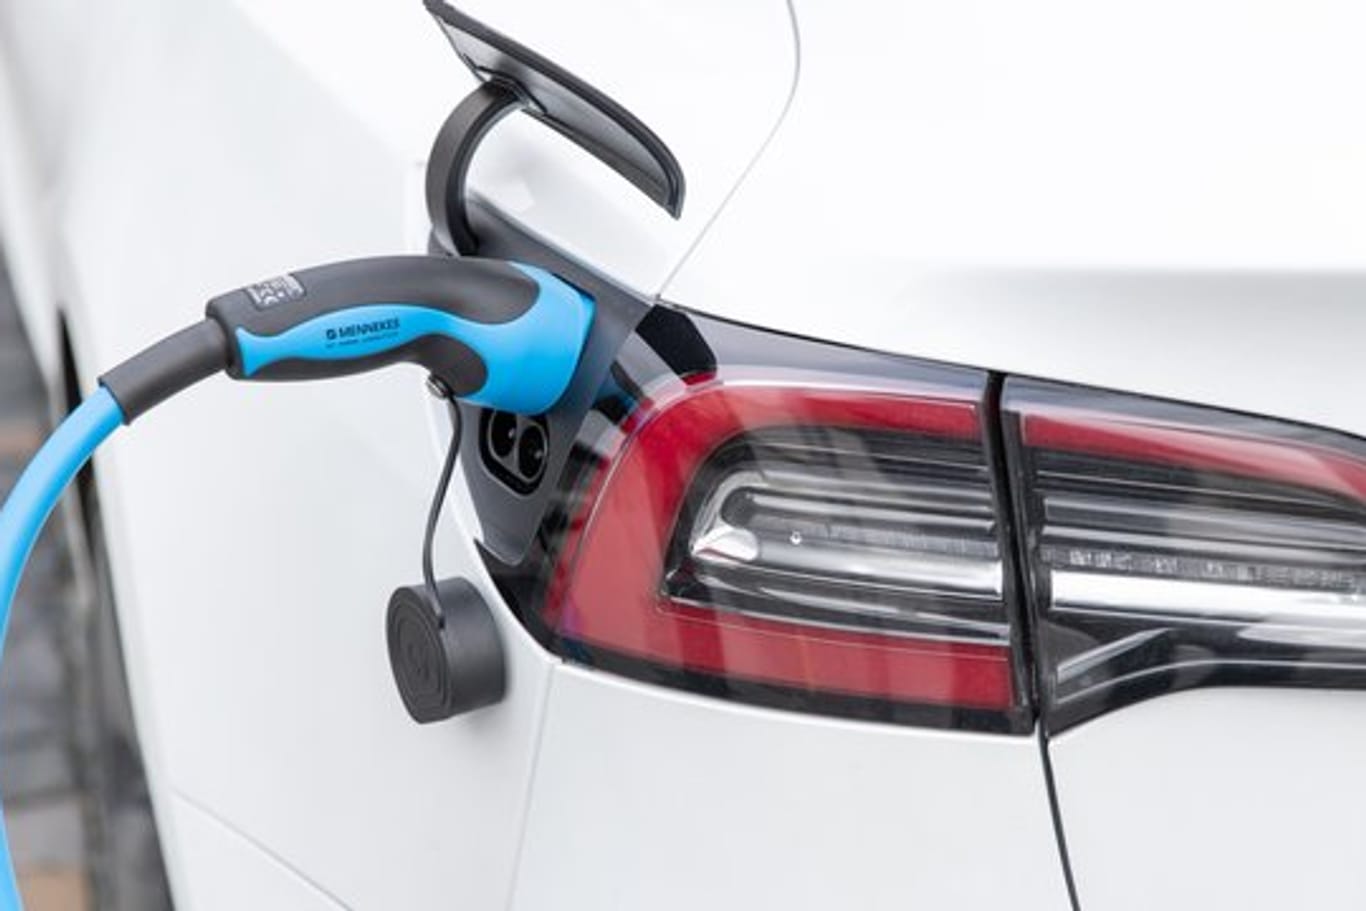 Ab 2020 könnten sogenannte CO2-Rabatte zu zusätzlichen Preisnachlässen beim Neukauf von emissionsarmen Autos führen.